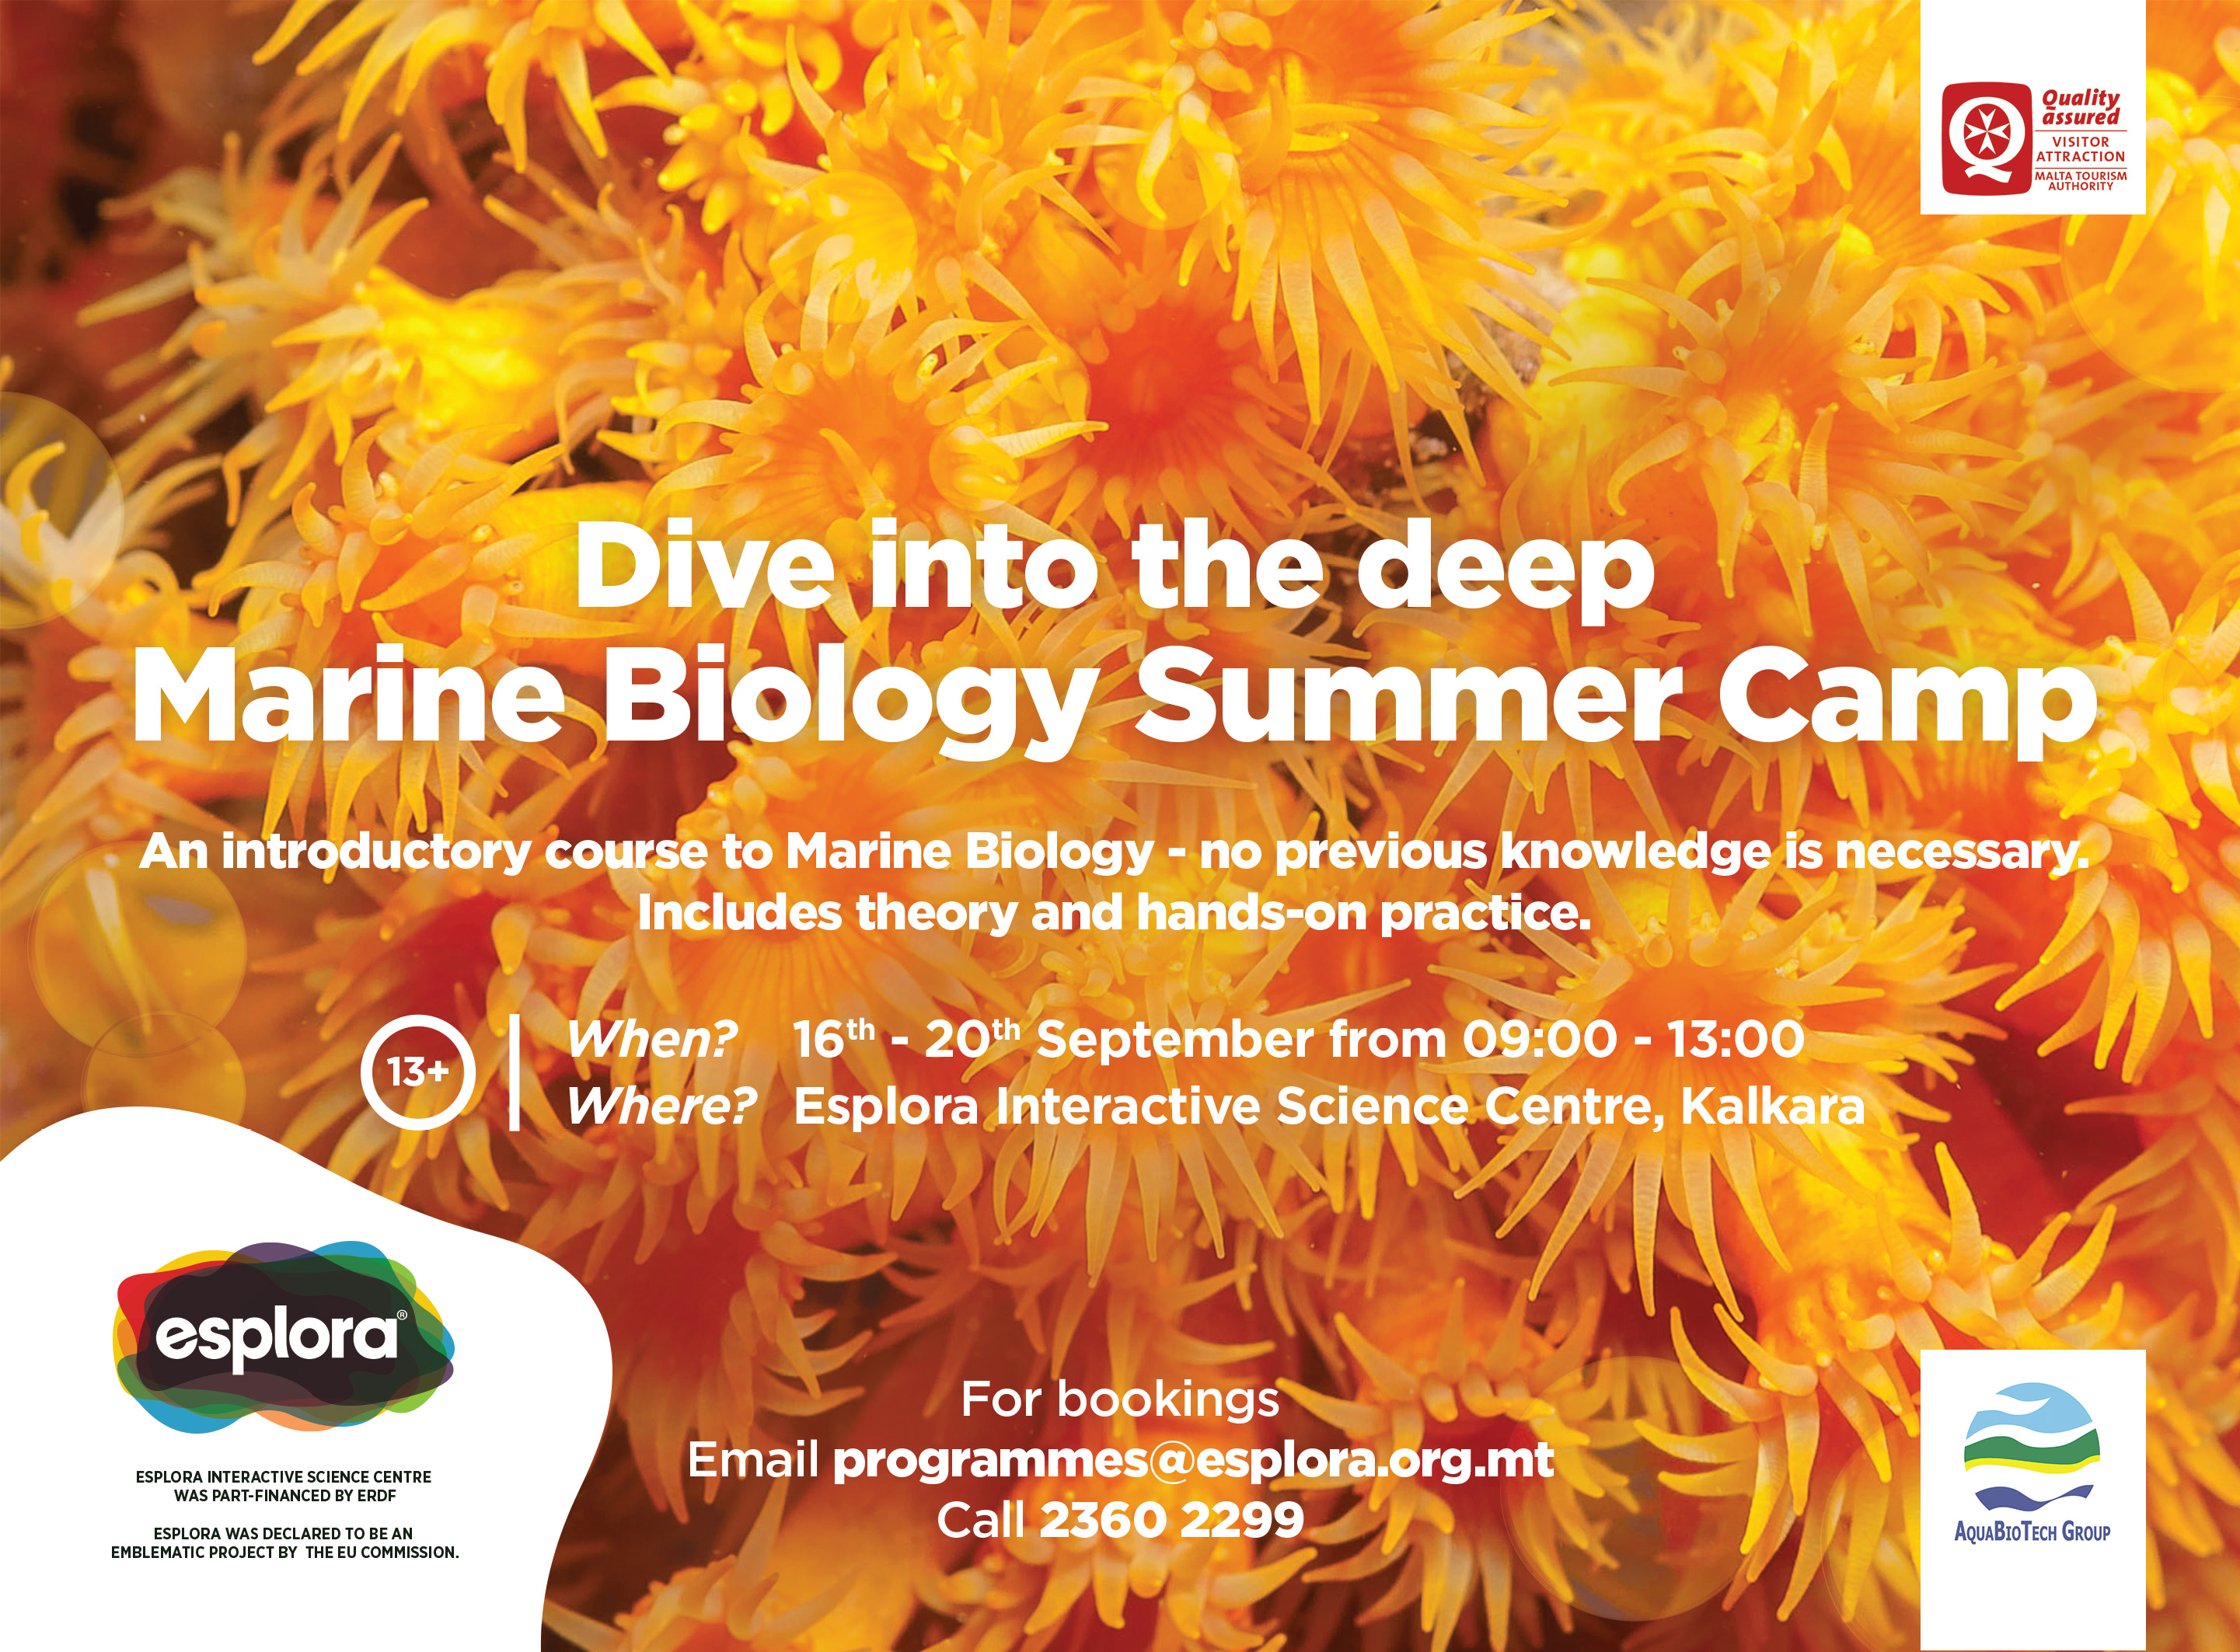 Marine Biology Summer Camp (13+) 2019 « Esplora